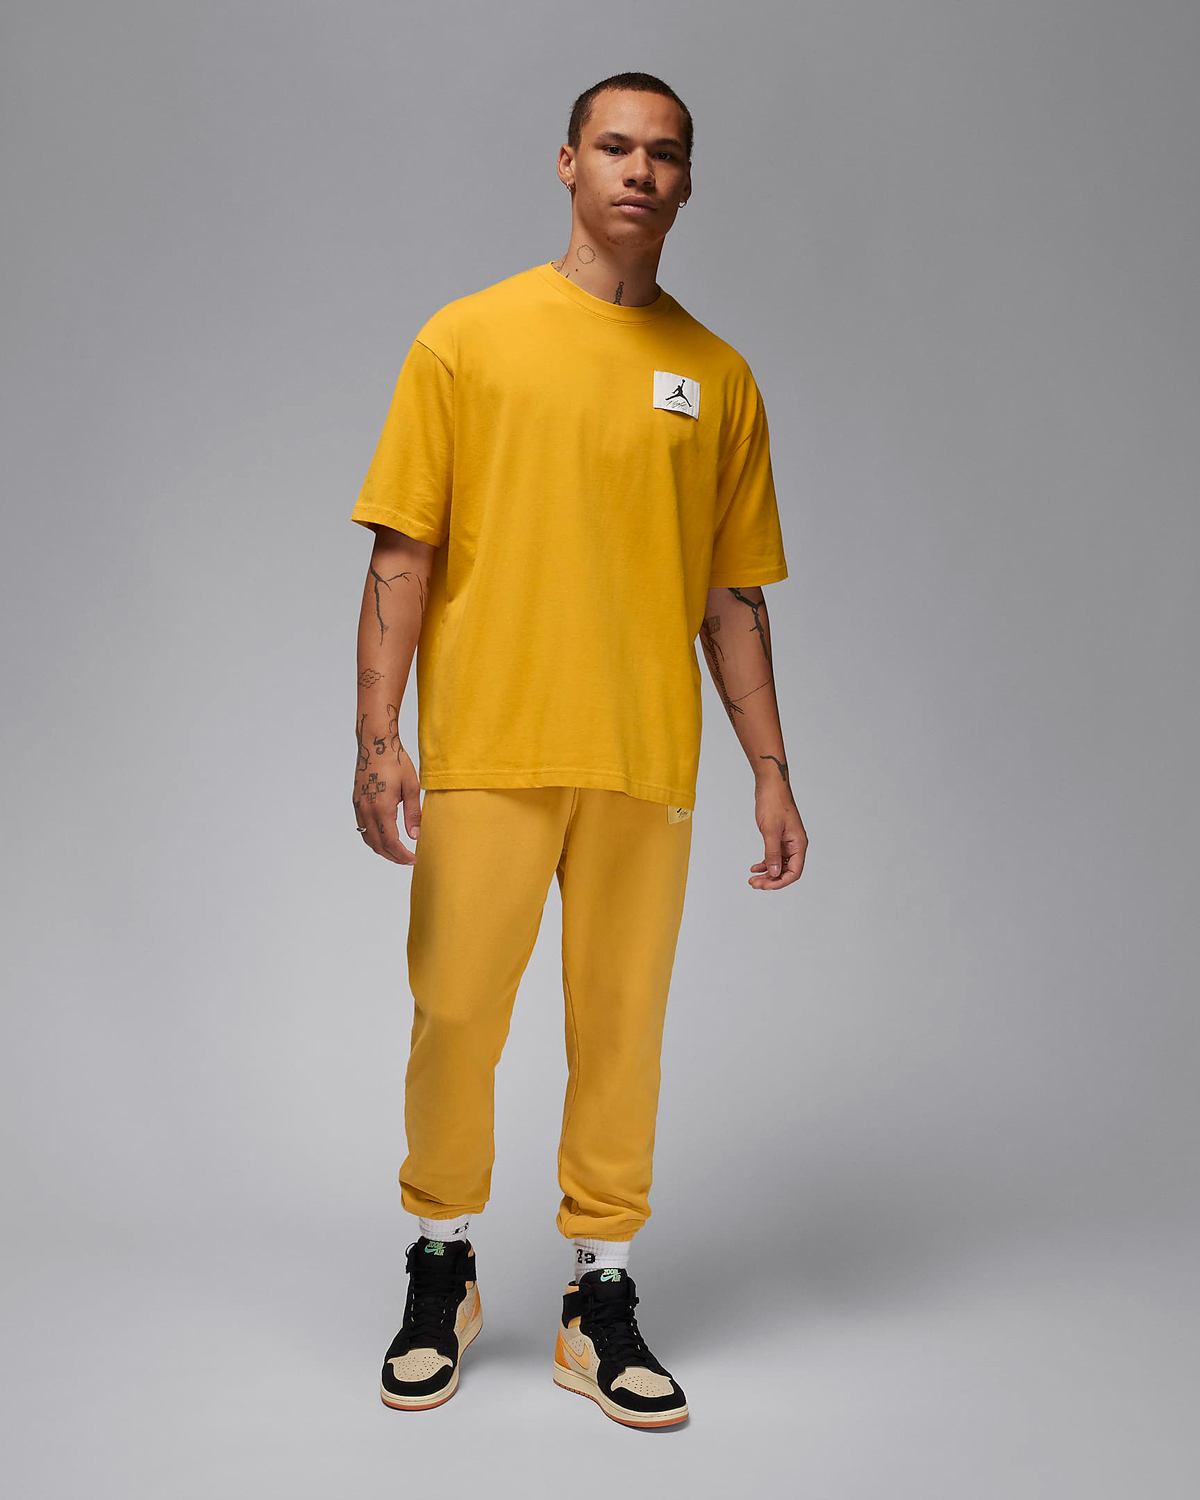 Jordan-Flight-Essentials-Oversized-T-Shirt-Yellow-Ochre-Sneaker-Outfit